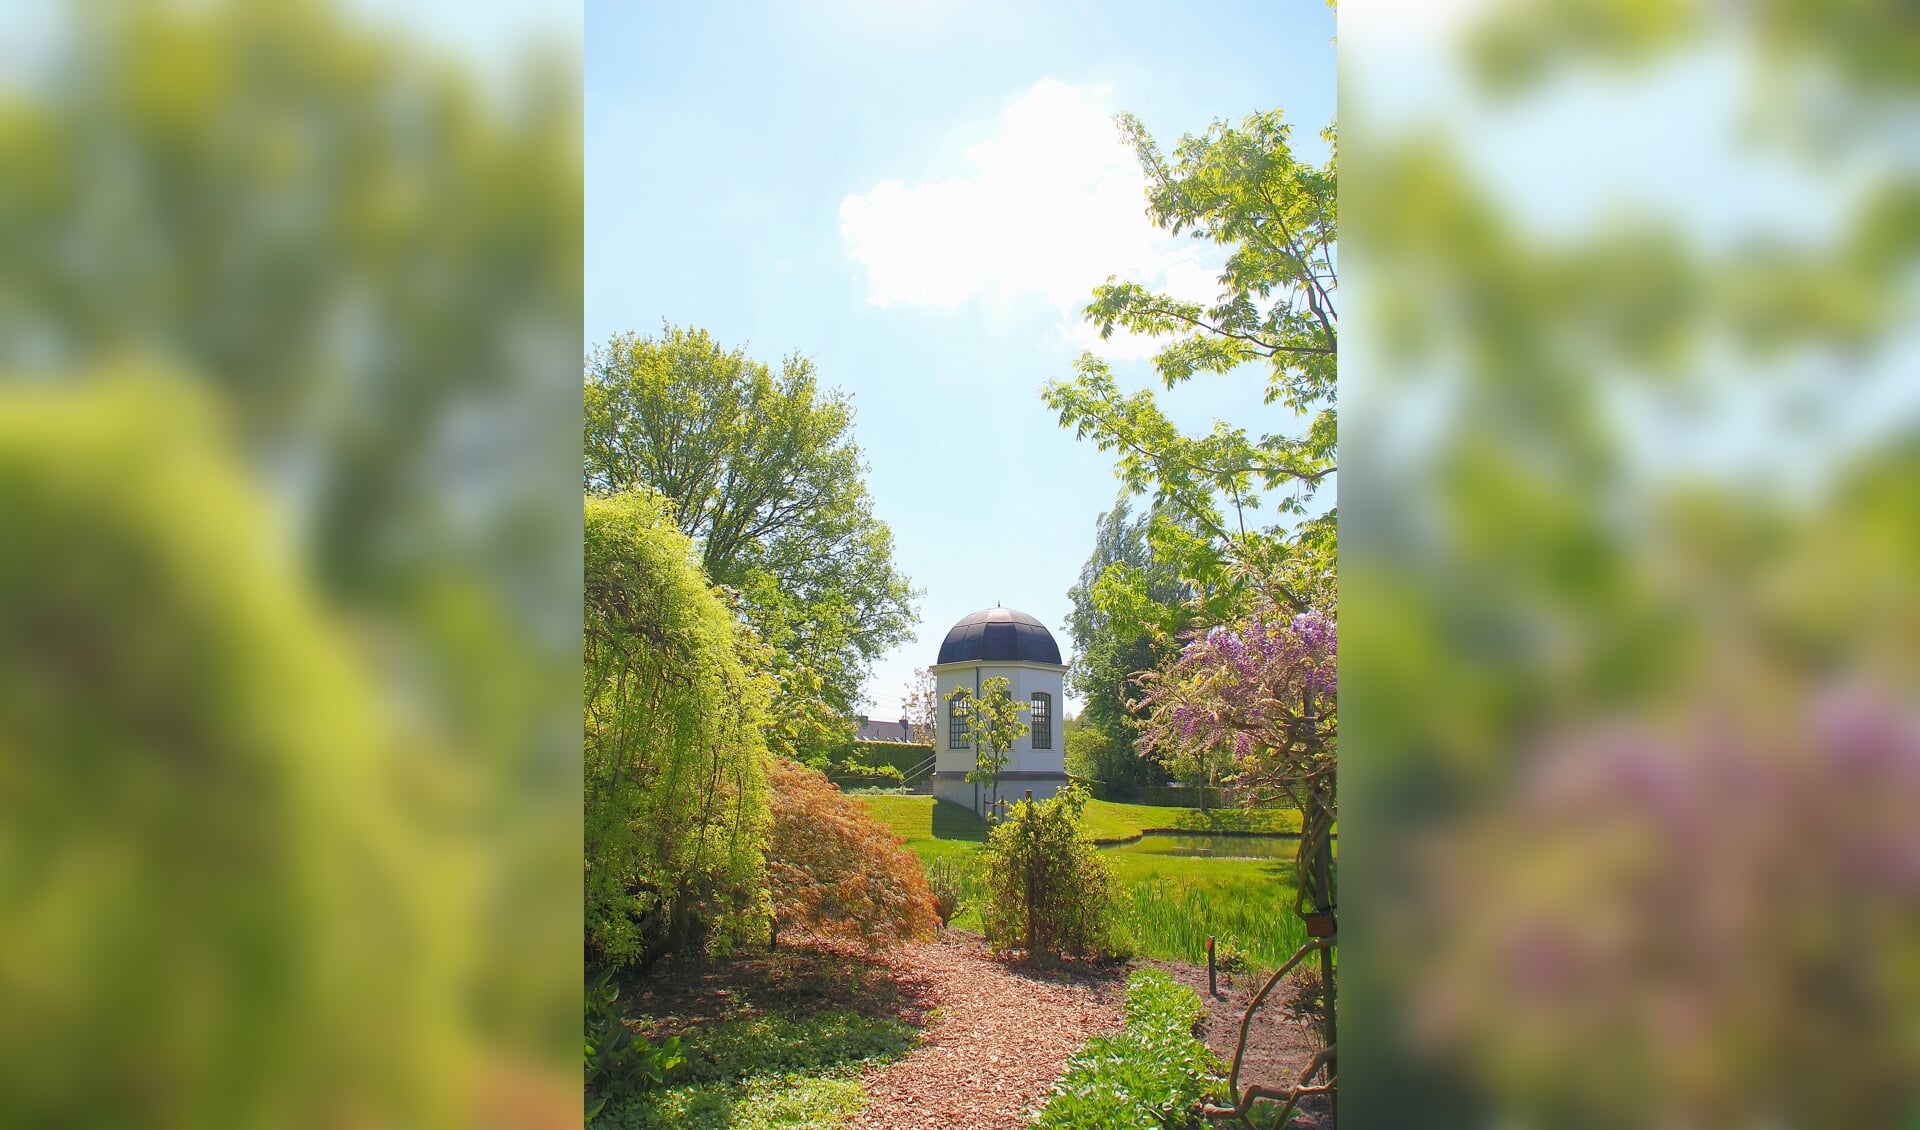 De beeld bepalende theekoepel van het Arboretum Oudenbosch